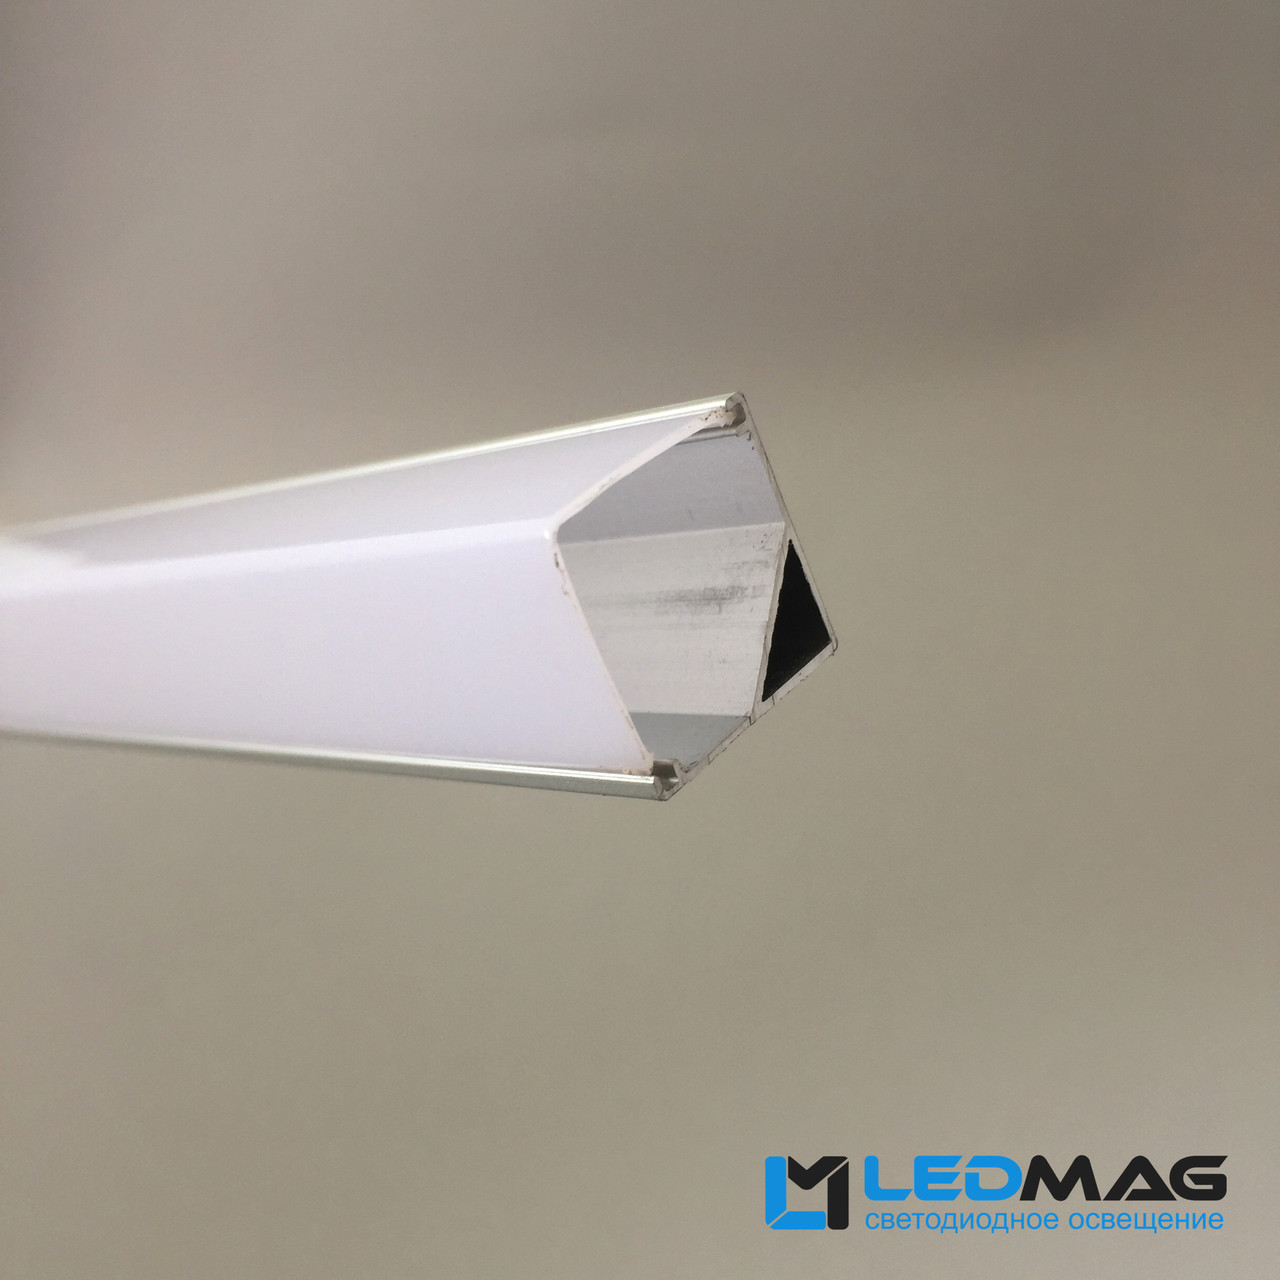 LED профиль для светодиодной ленты угловой 16х16 мм с прямоугольным  рассеивателем в Украине от "интернет-магазина LEDMAG" - 24442941